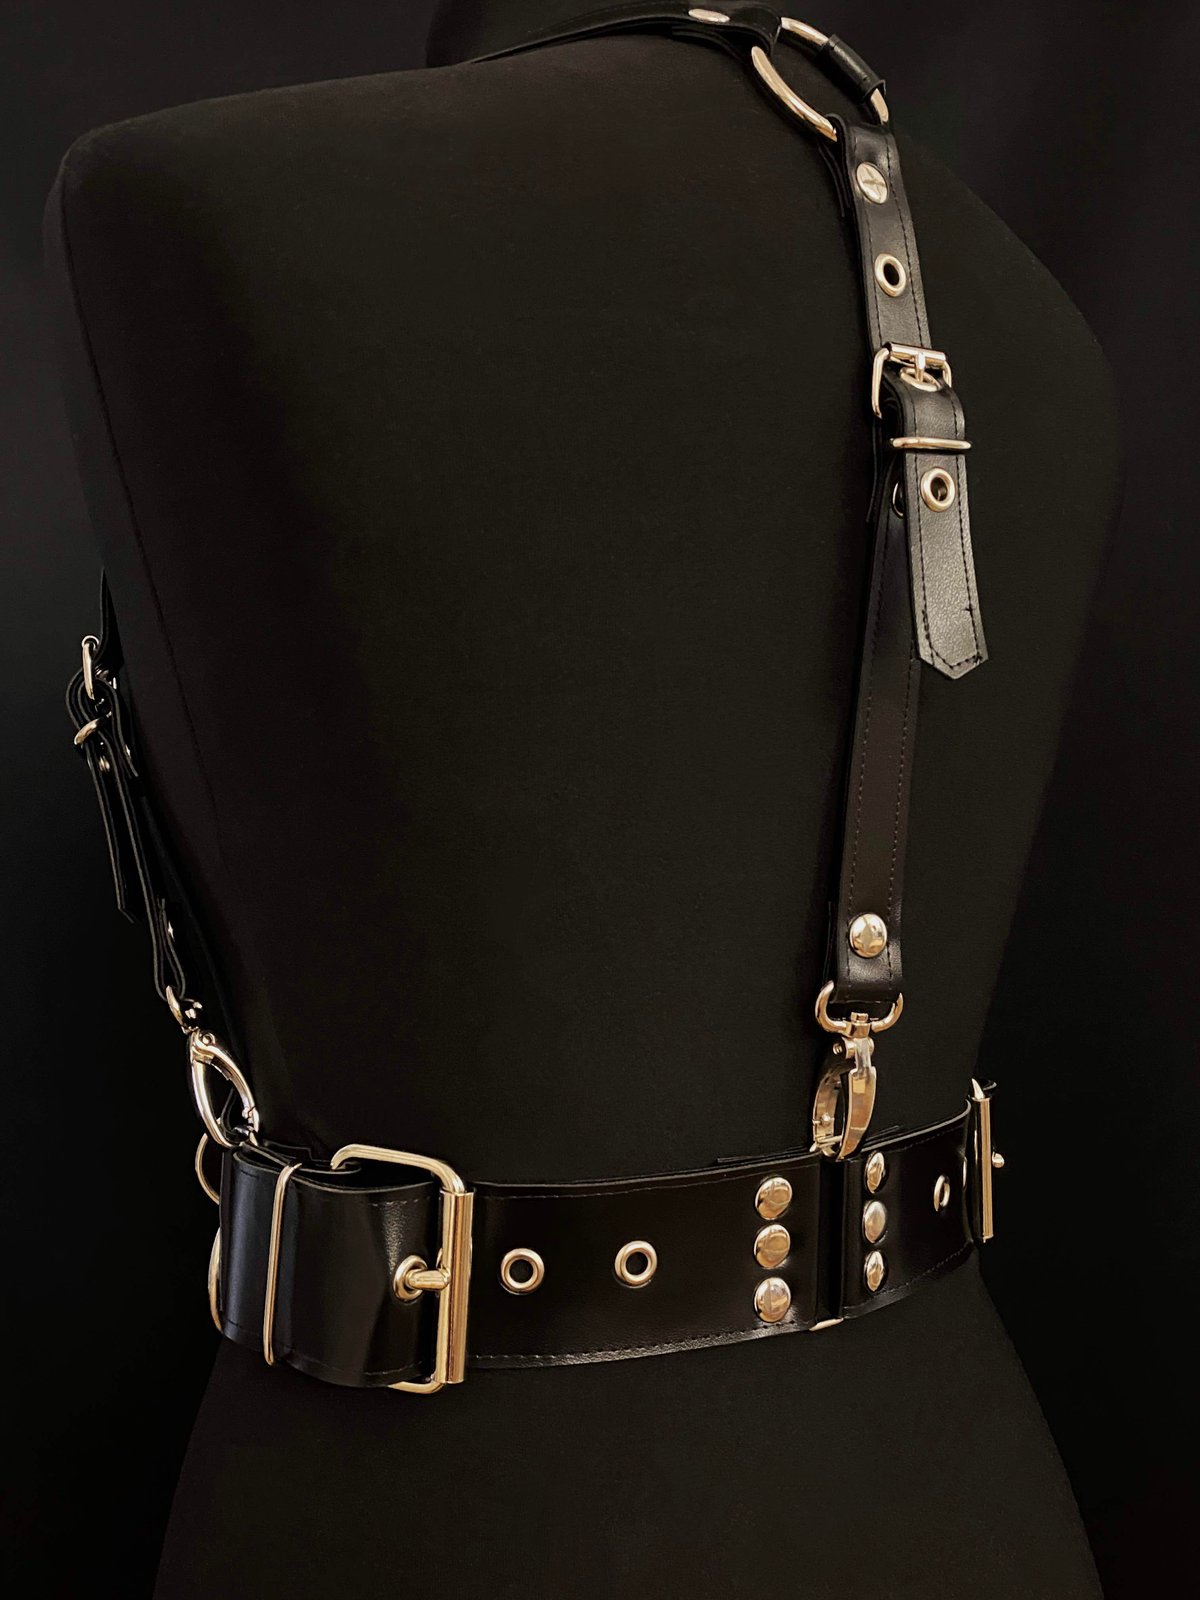 Studded waist cincher harness